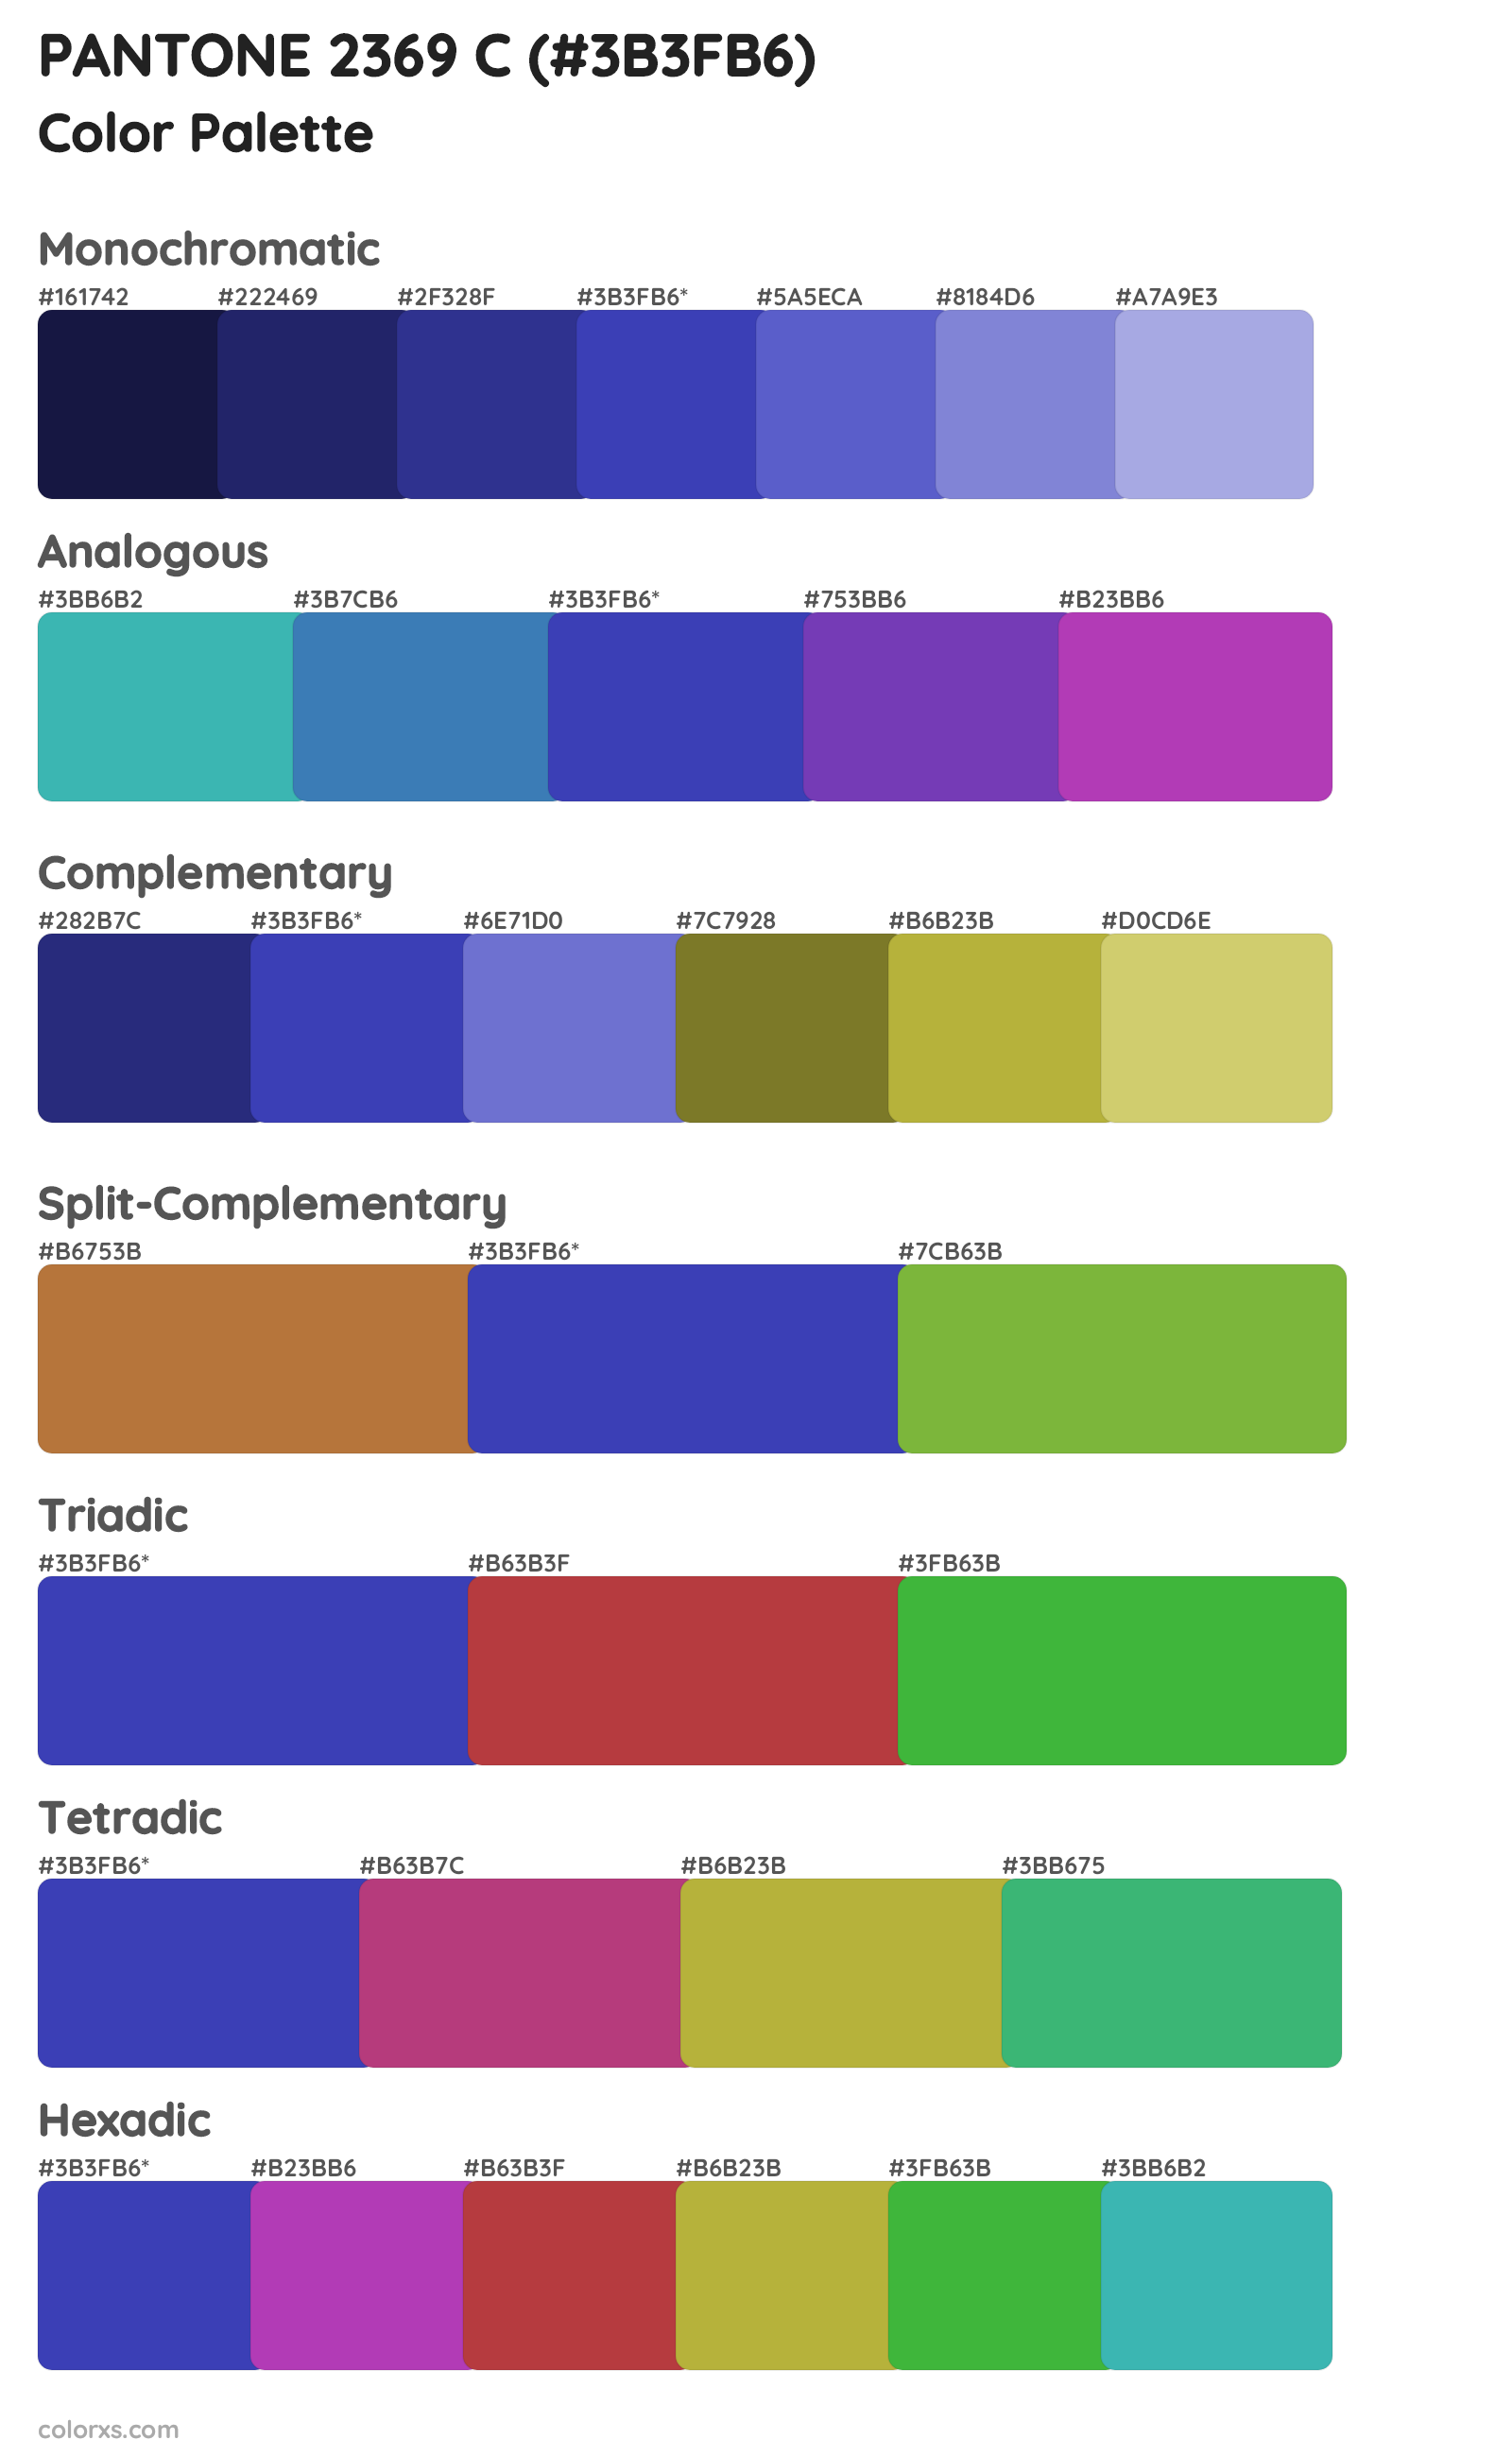 PANTONE 2369 C Color Scheme Palettes